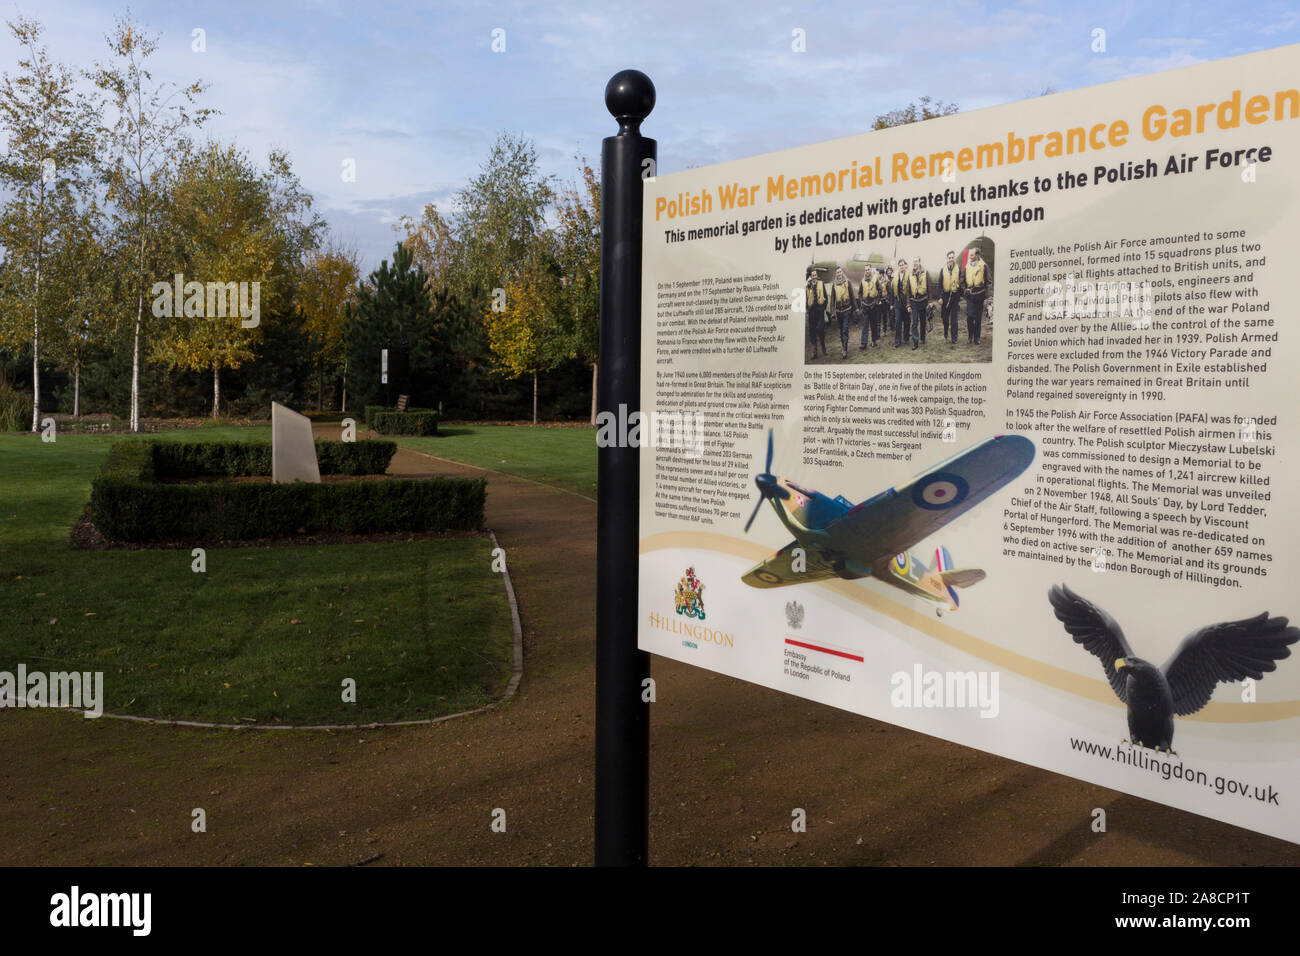 Un panneau d'information dans le jardin du souvenir (ouvert en 2015), qui rend le service et le sacrifice des soldats WW2 Armée de l'Air polonaise, les équipages à la Polish War Memorial, le 6 novembre 2019, dans la région de South Ruislip, Northolt, Londres, Angleterre. Le Polish War Memorial est à la mémoire des aviateurs de la Pologne qui a servi dans la Royal Air Force en tant que partie de la contribution polonaise à la seconde guerre mondiale. Le mémorial a été conçu par Mieczyslaw Lubelski, qui avait été interné dans un camp de travaux forcés pendant la guerre. Il est construit à partir de la pierre de Portland avec lettrage en bronze et un aigle de bronze, symbole de l'Air polonaise pour Banque D'Images